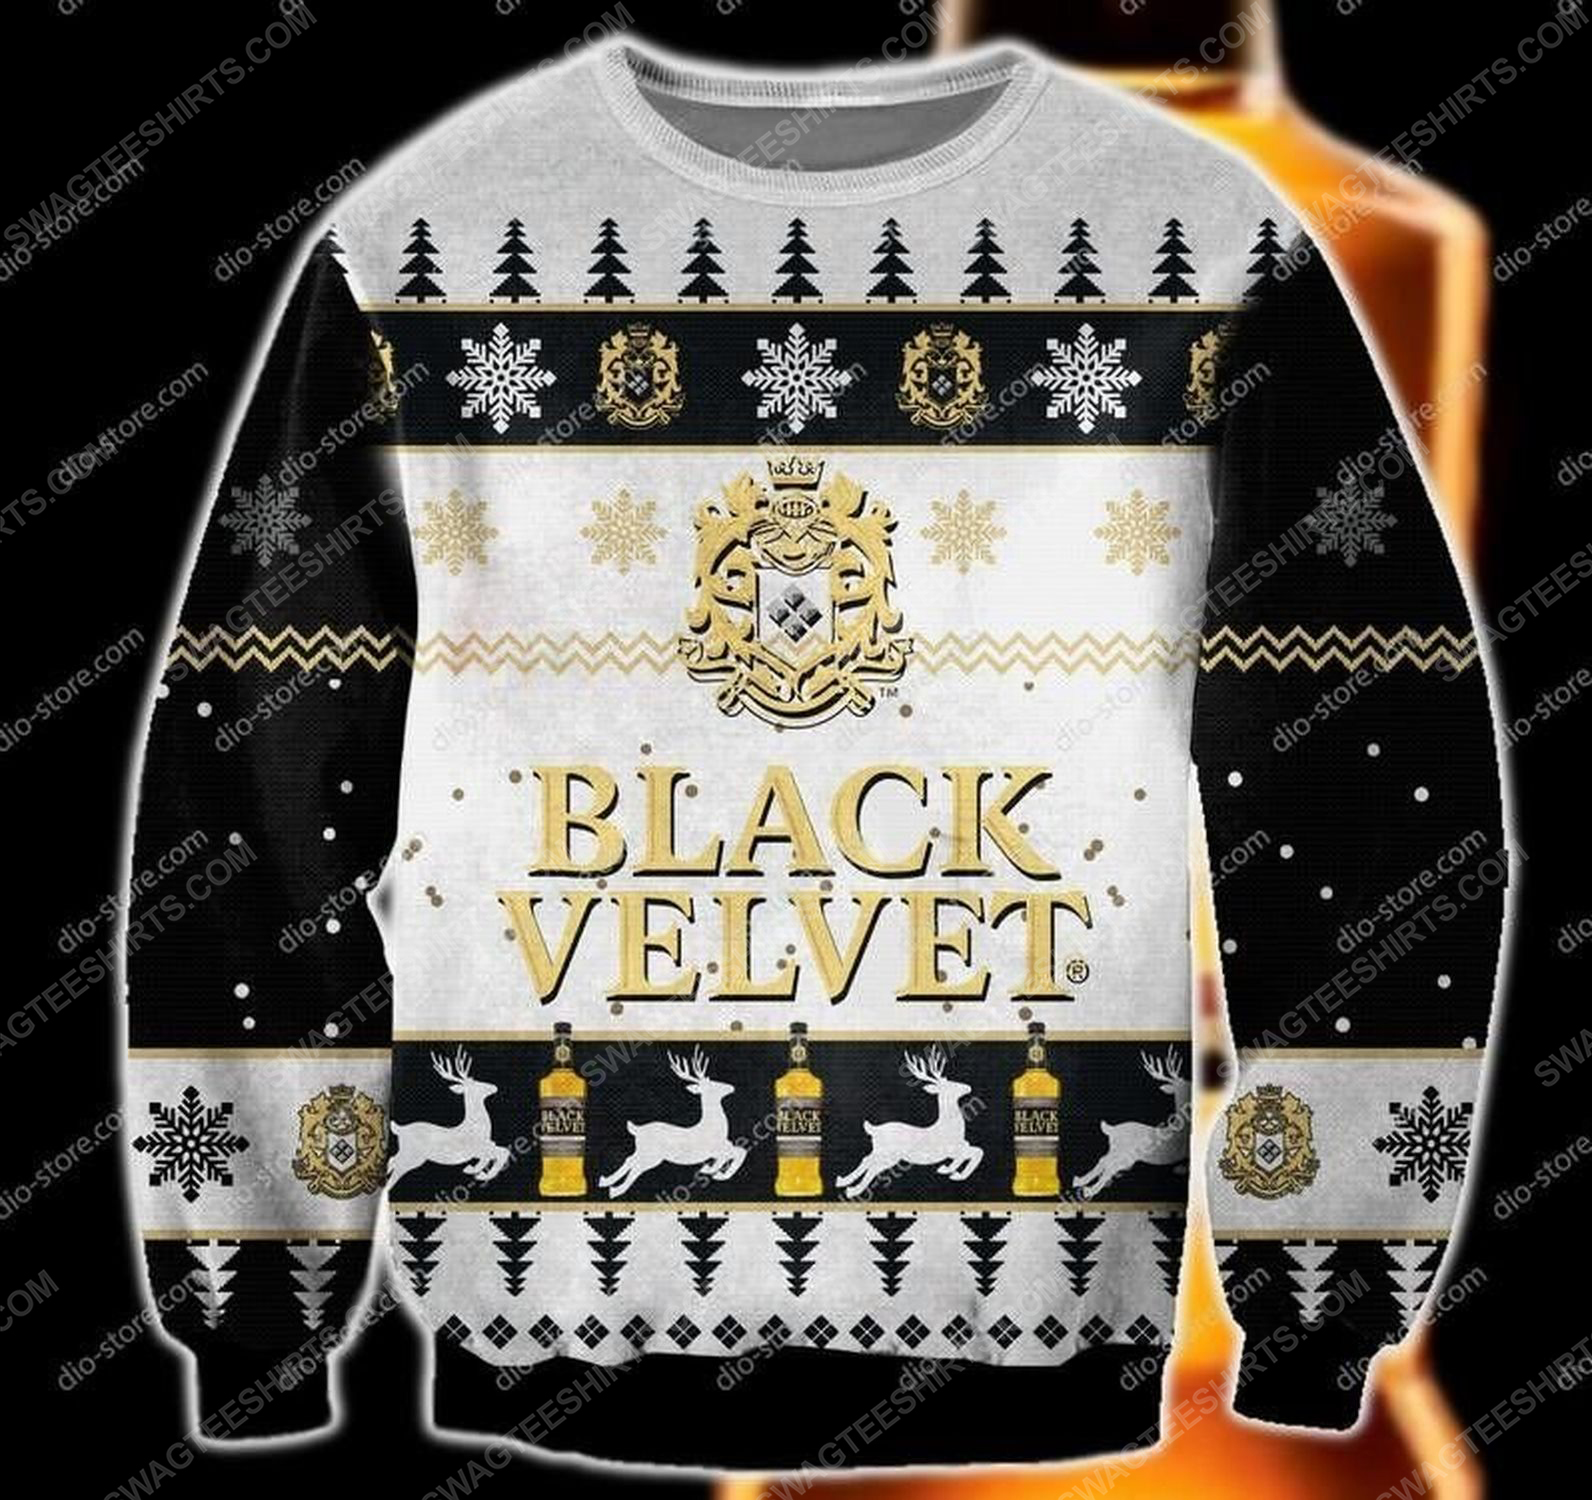 Black velvet blended canadian whisky ugly christmas sweater